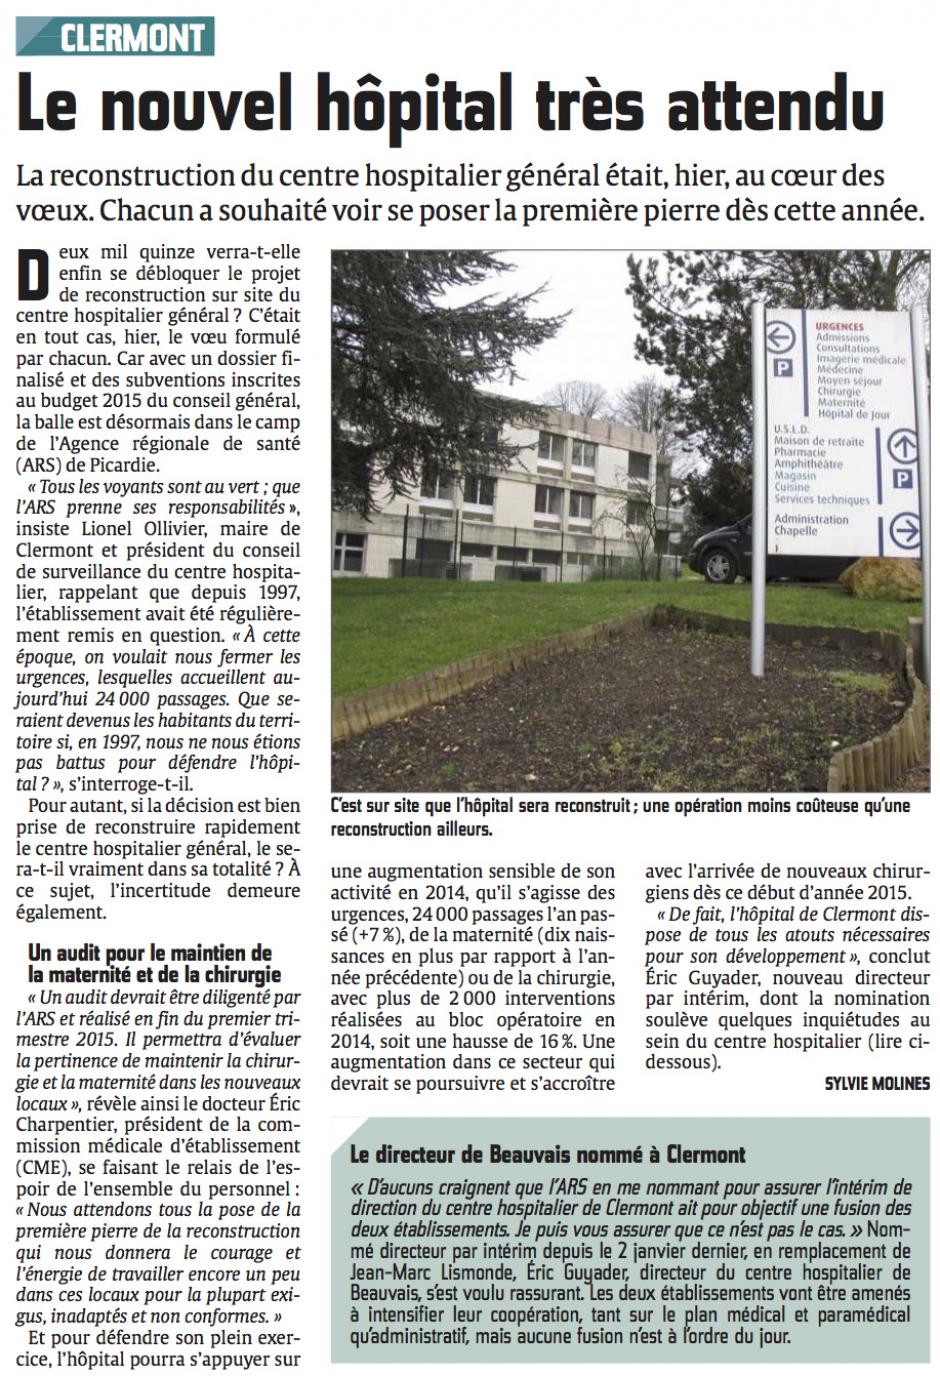 20150121-CP-Clermont-Le nouvel hôpital très attendu